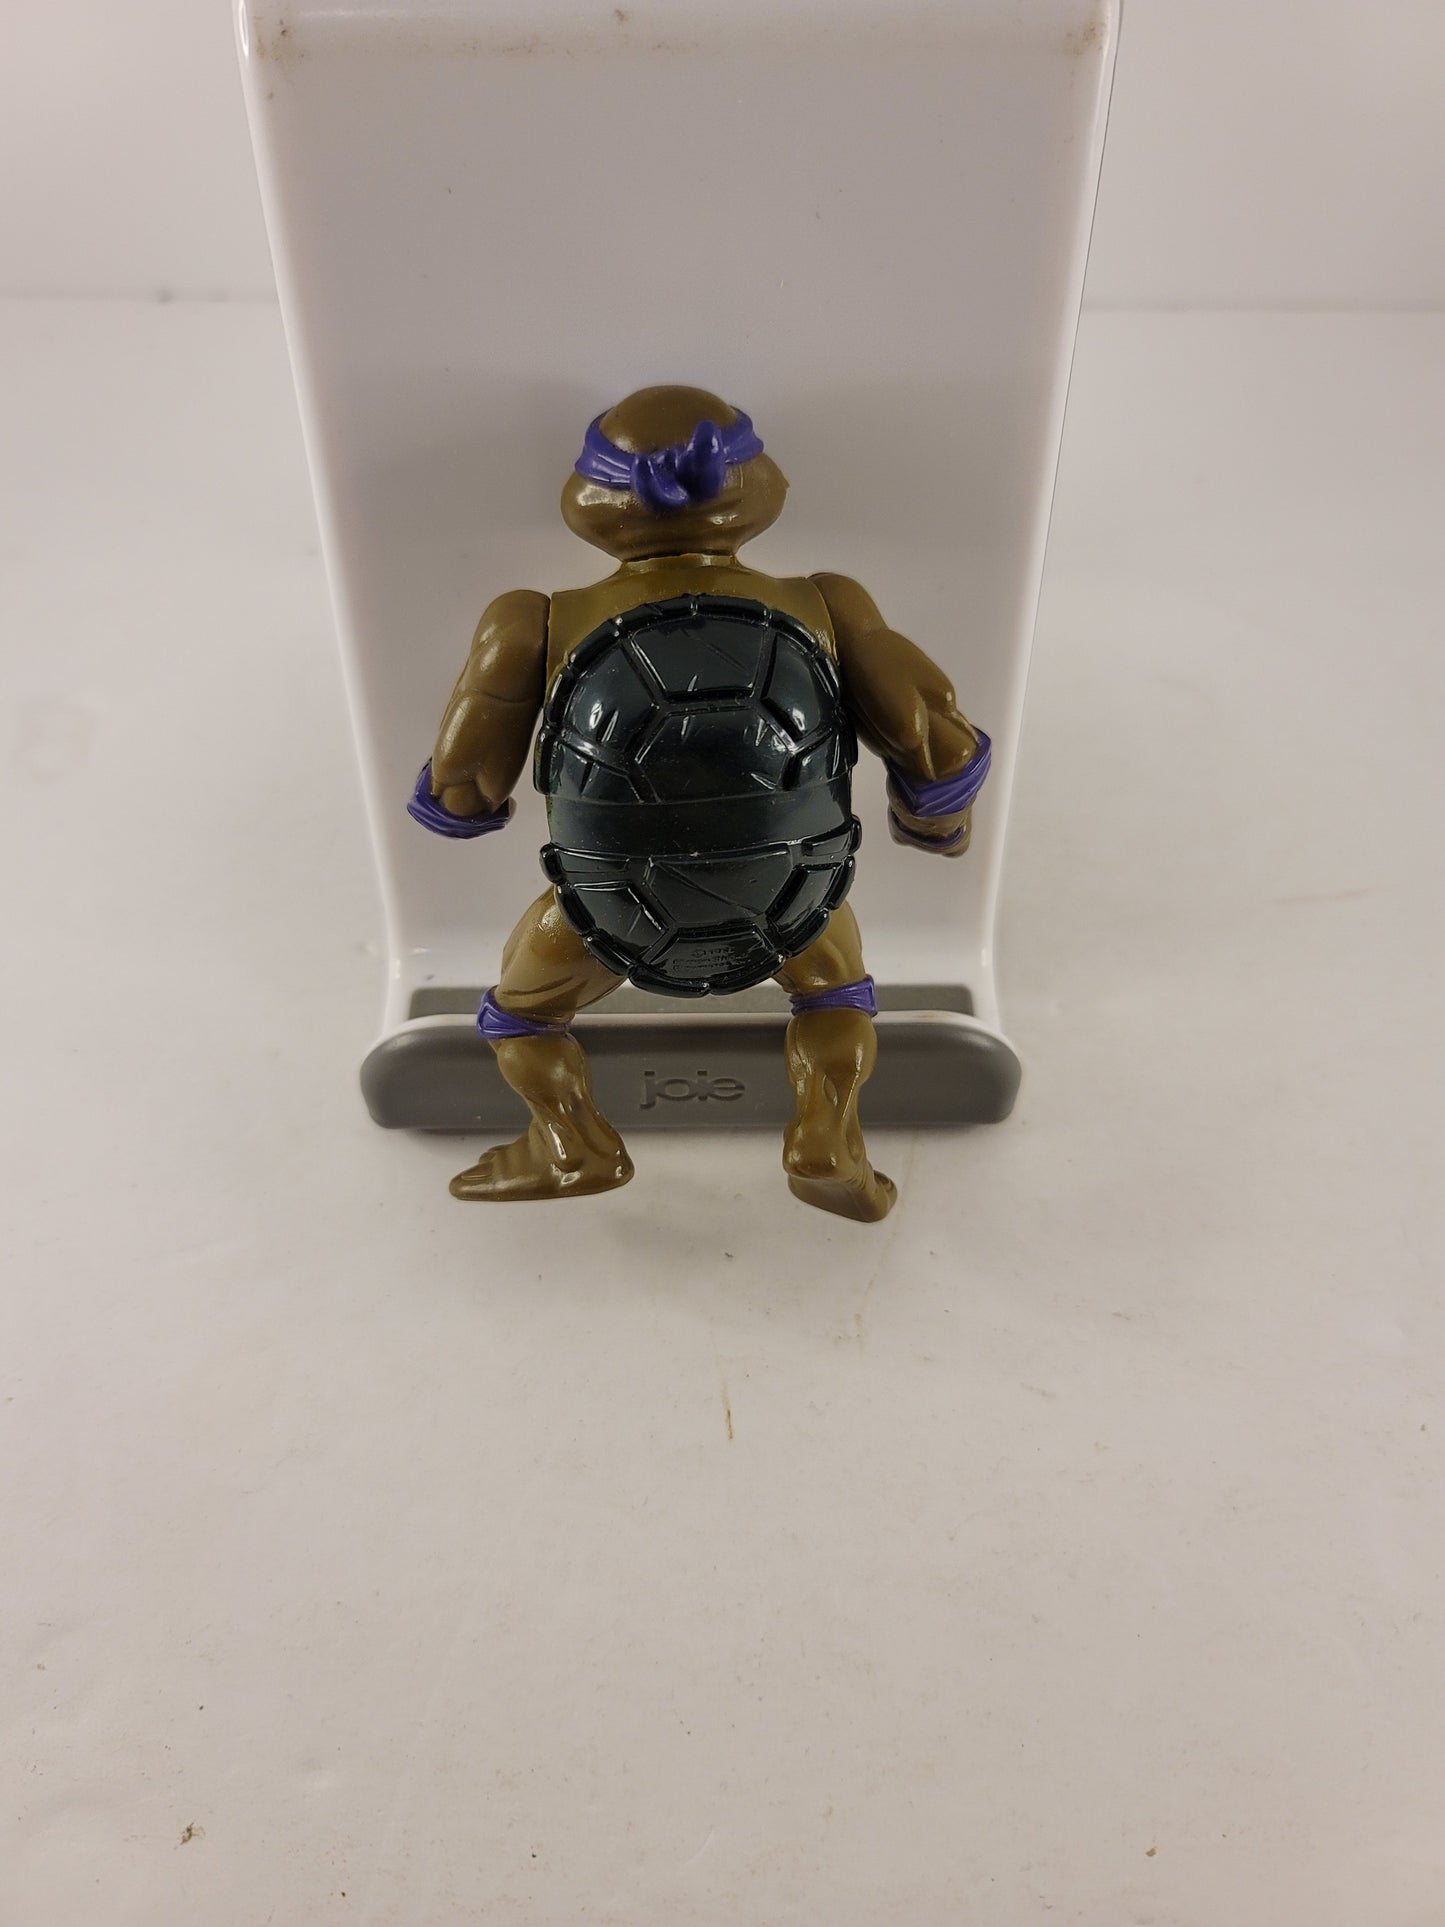 Donatello - 1988 Teenage Mutant Ninja Turtles - Playmate Toys